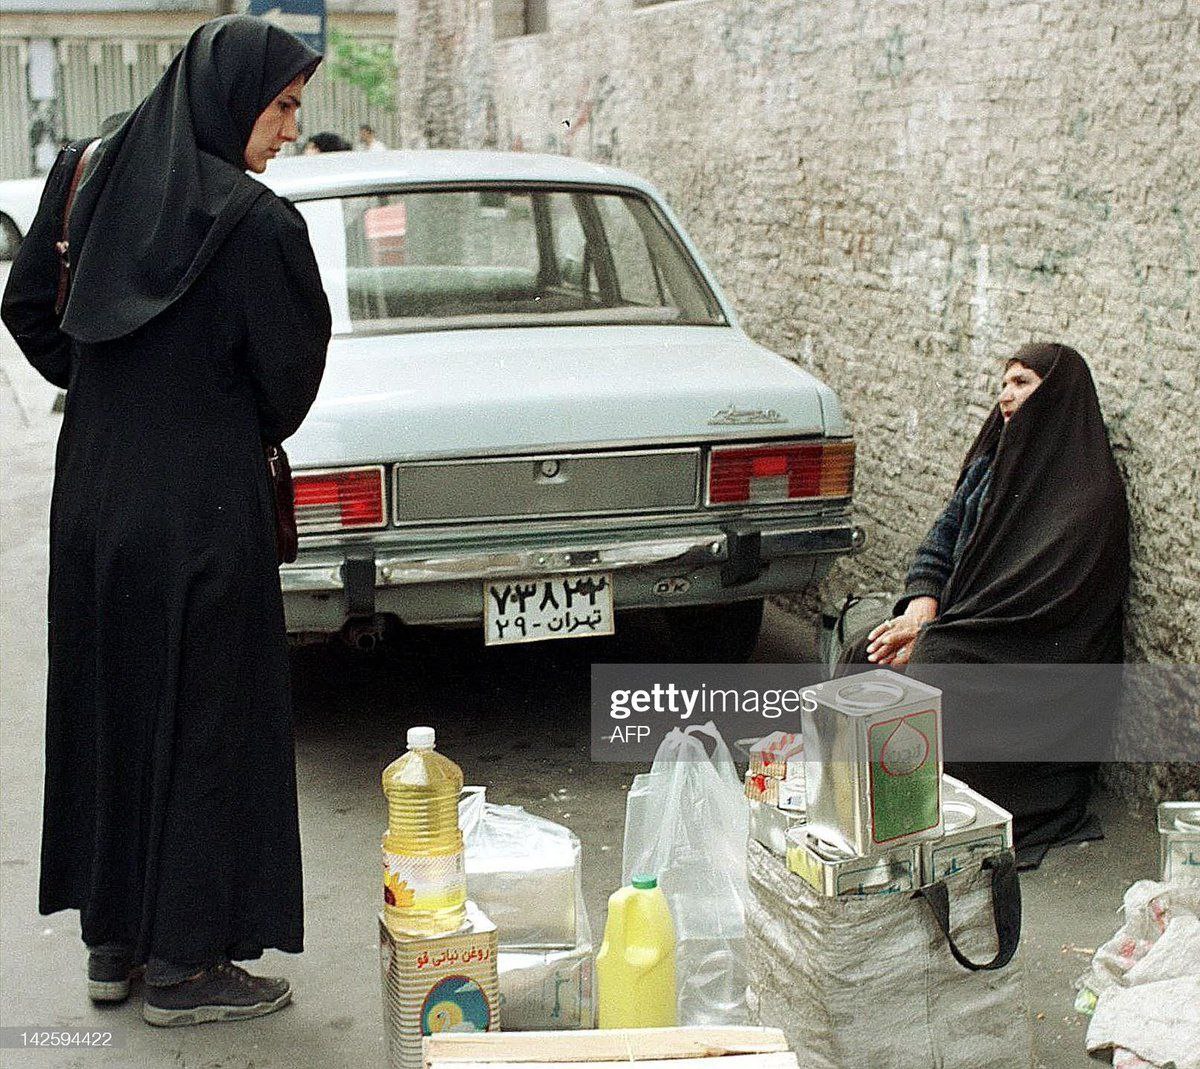 فروش آزاد اجناس کوپنی در تهران